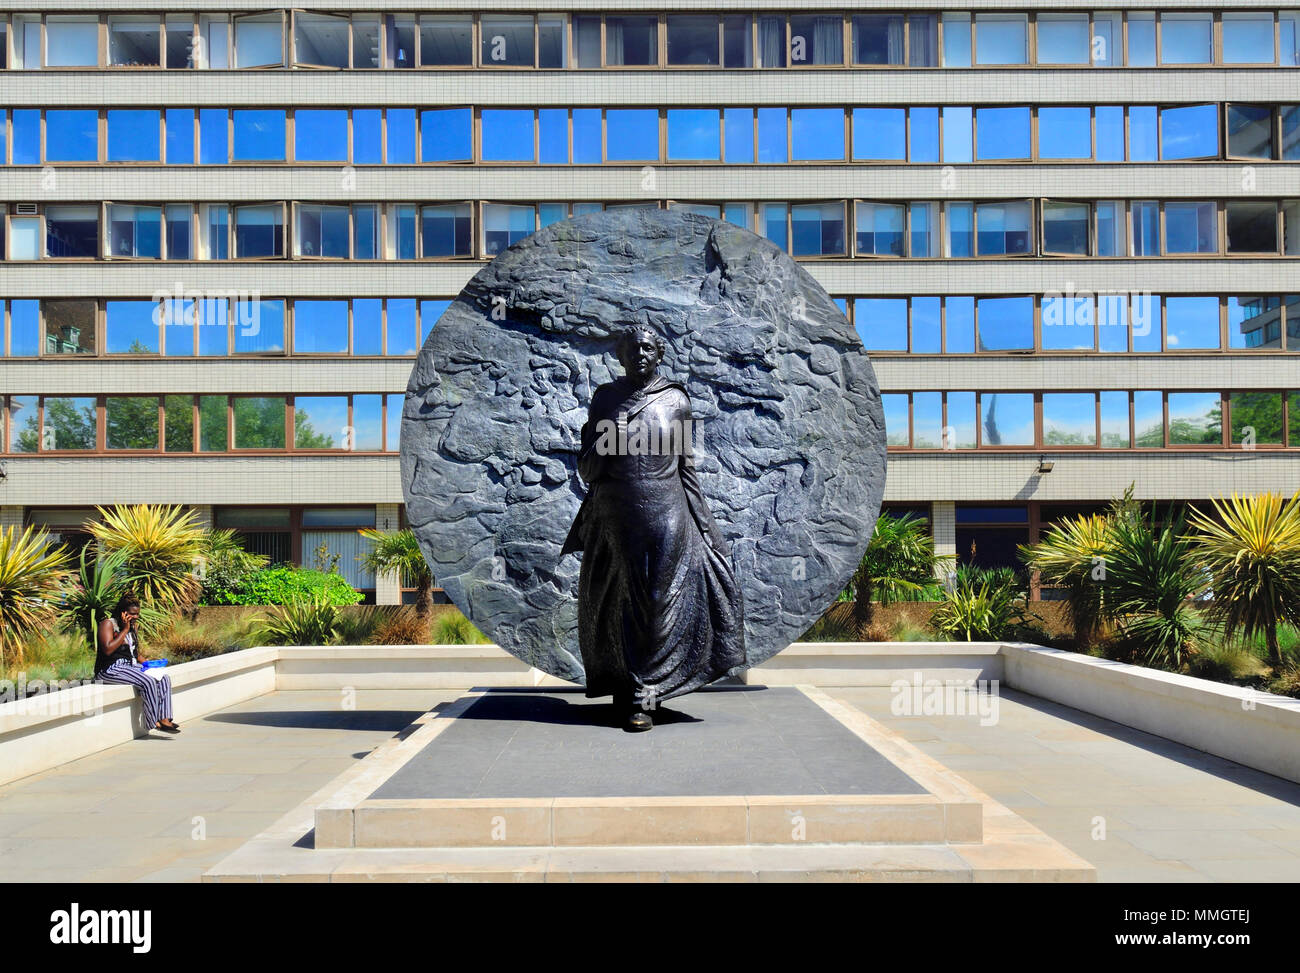 London, England, UK. Denkmal für Maria Seacole (Jamaikanische geborene Krankenschwester: 1805-1881) auf dem Gelände des St Thomas' Hospital. Von Martin Jennings, 2016. Stockfoto